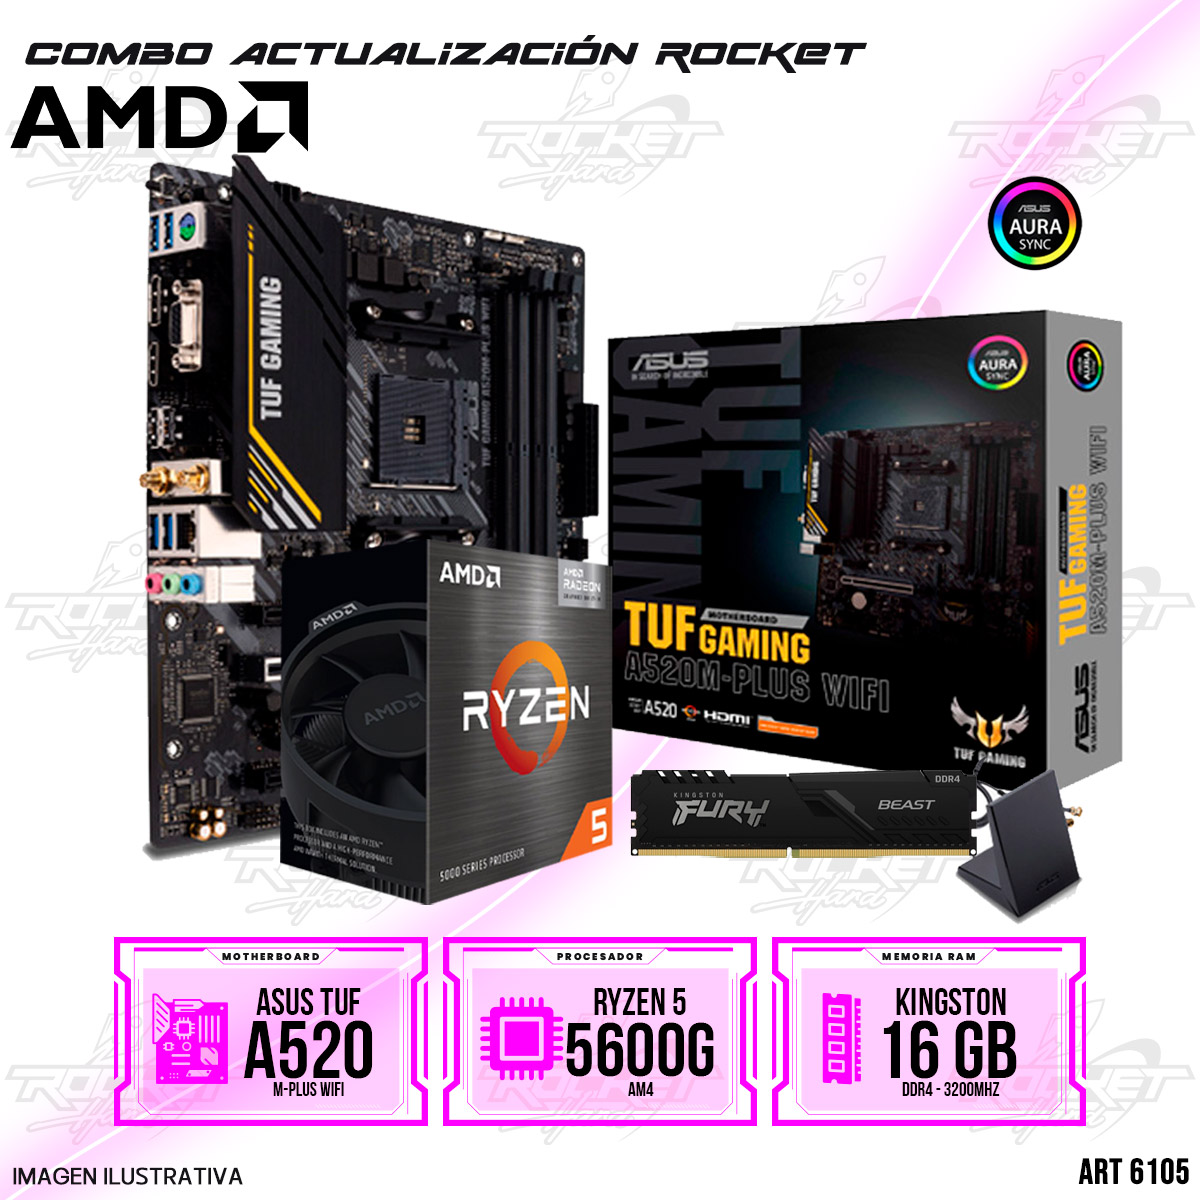 COMBO ROCKET AMD RYZEN 5 5600G - A520 WIFI -16GB RAM